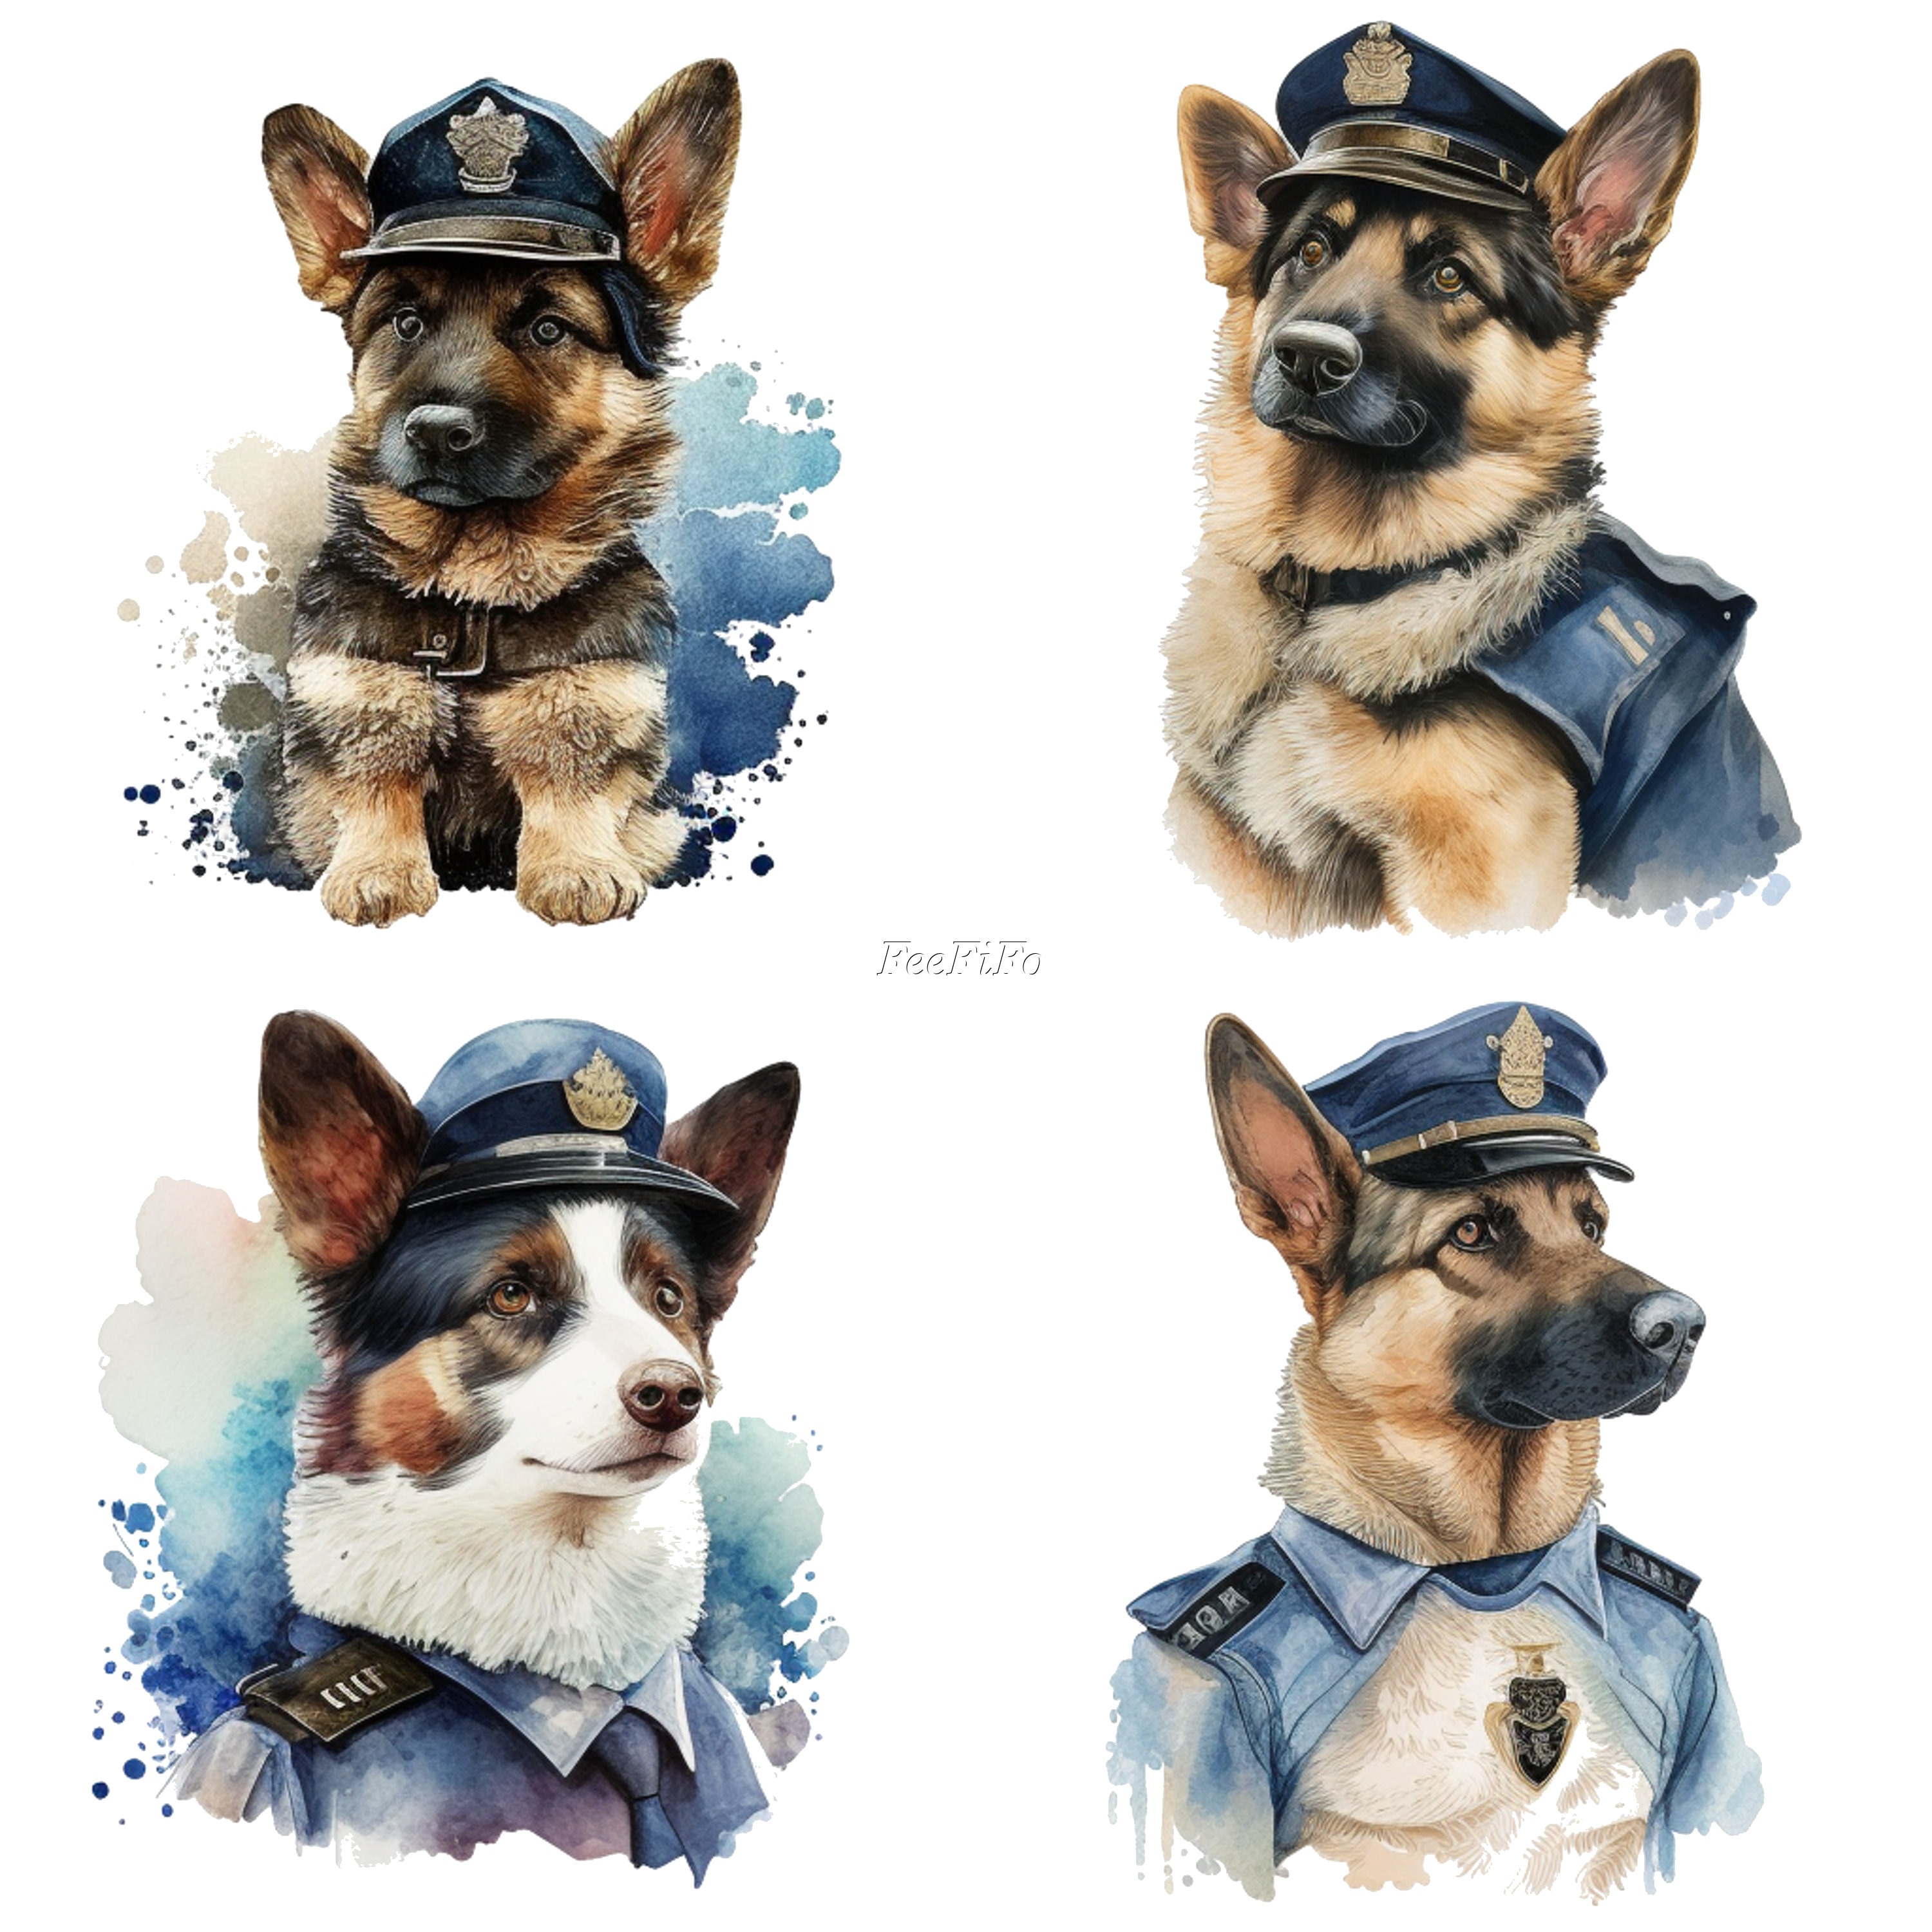 München, Deutschland. 09 Mai, 2019. Polizei Hund, Hund am Arbeitsplatz  Sporn - Puffs auf der Tasche. Sprengstoffe, Uniformen, Polizei, Polizei.